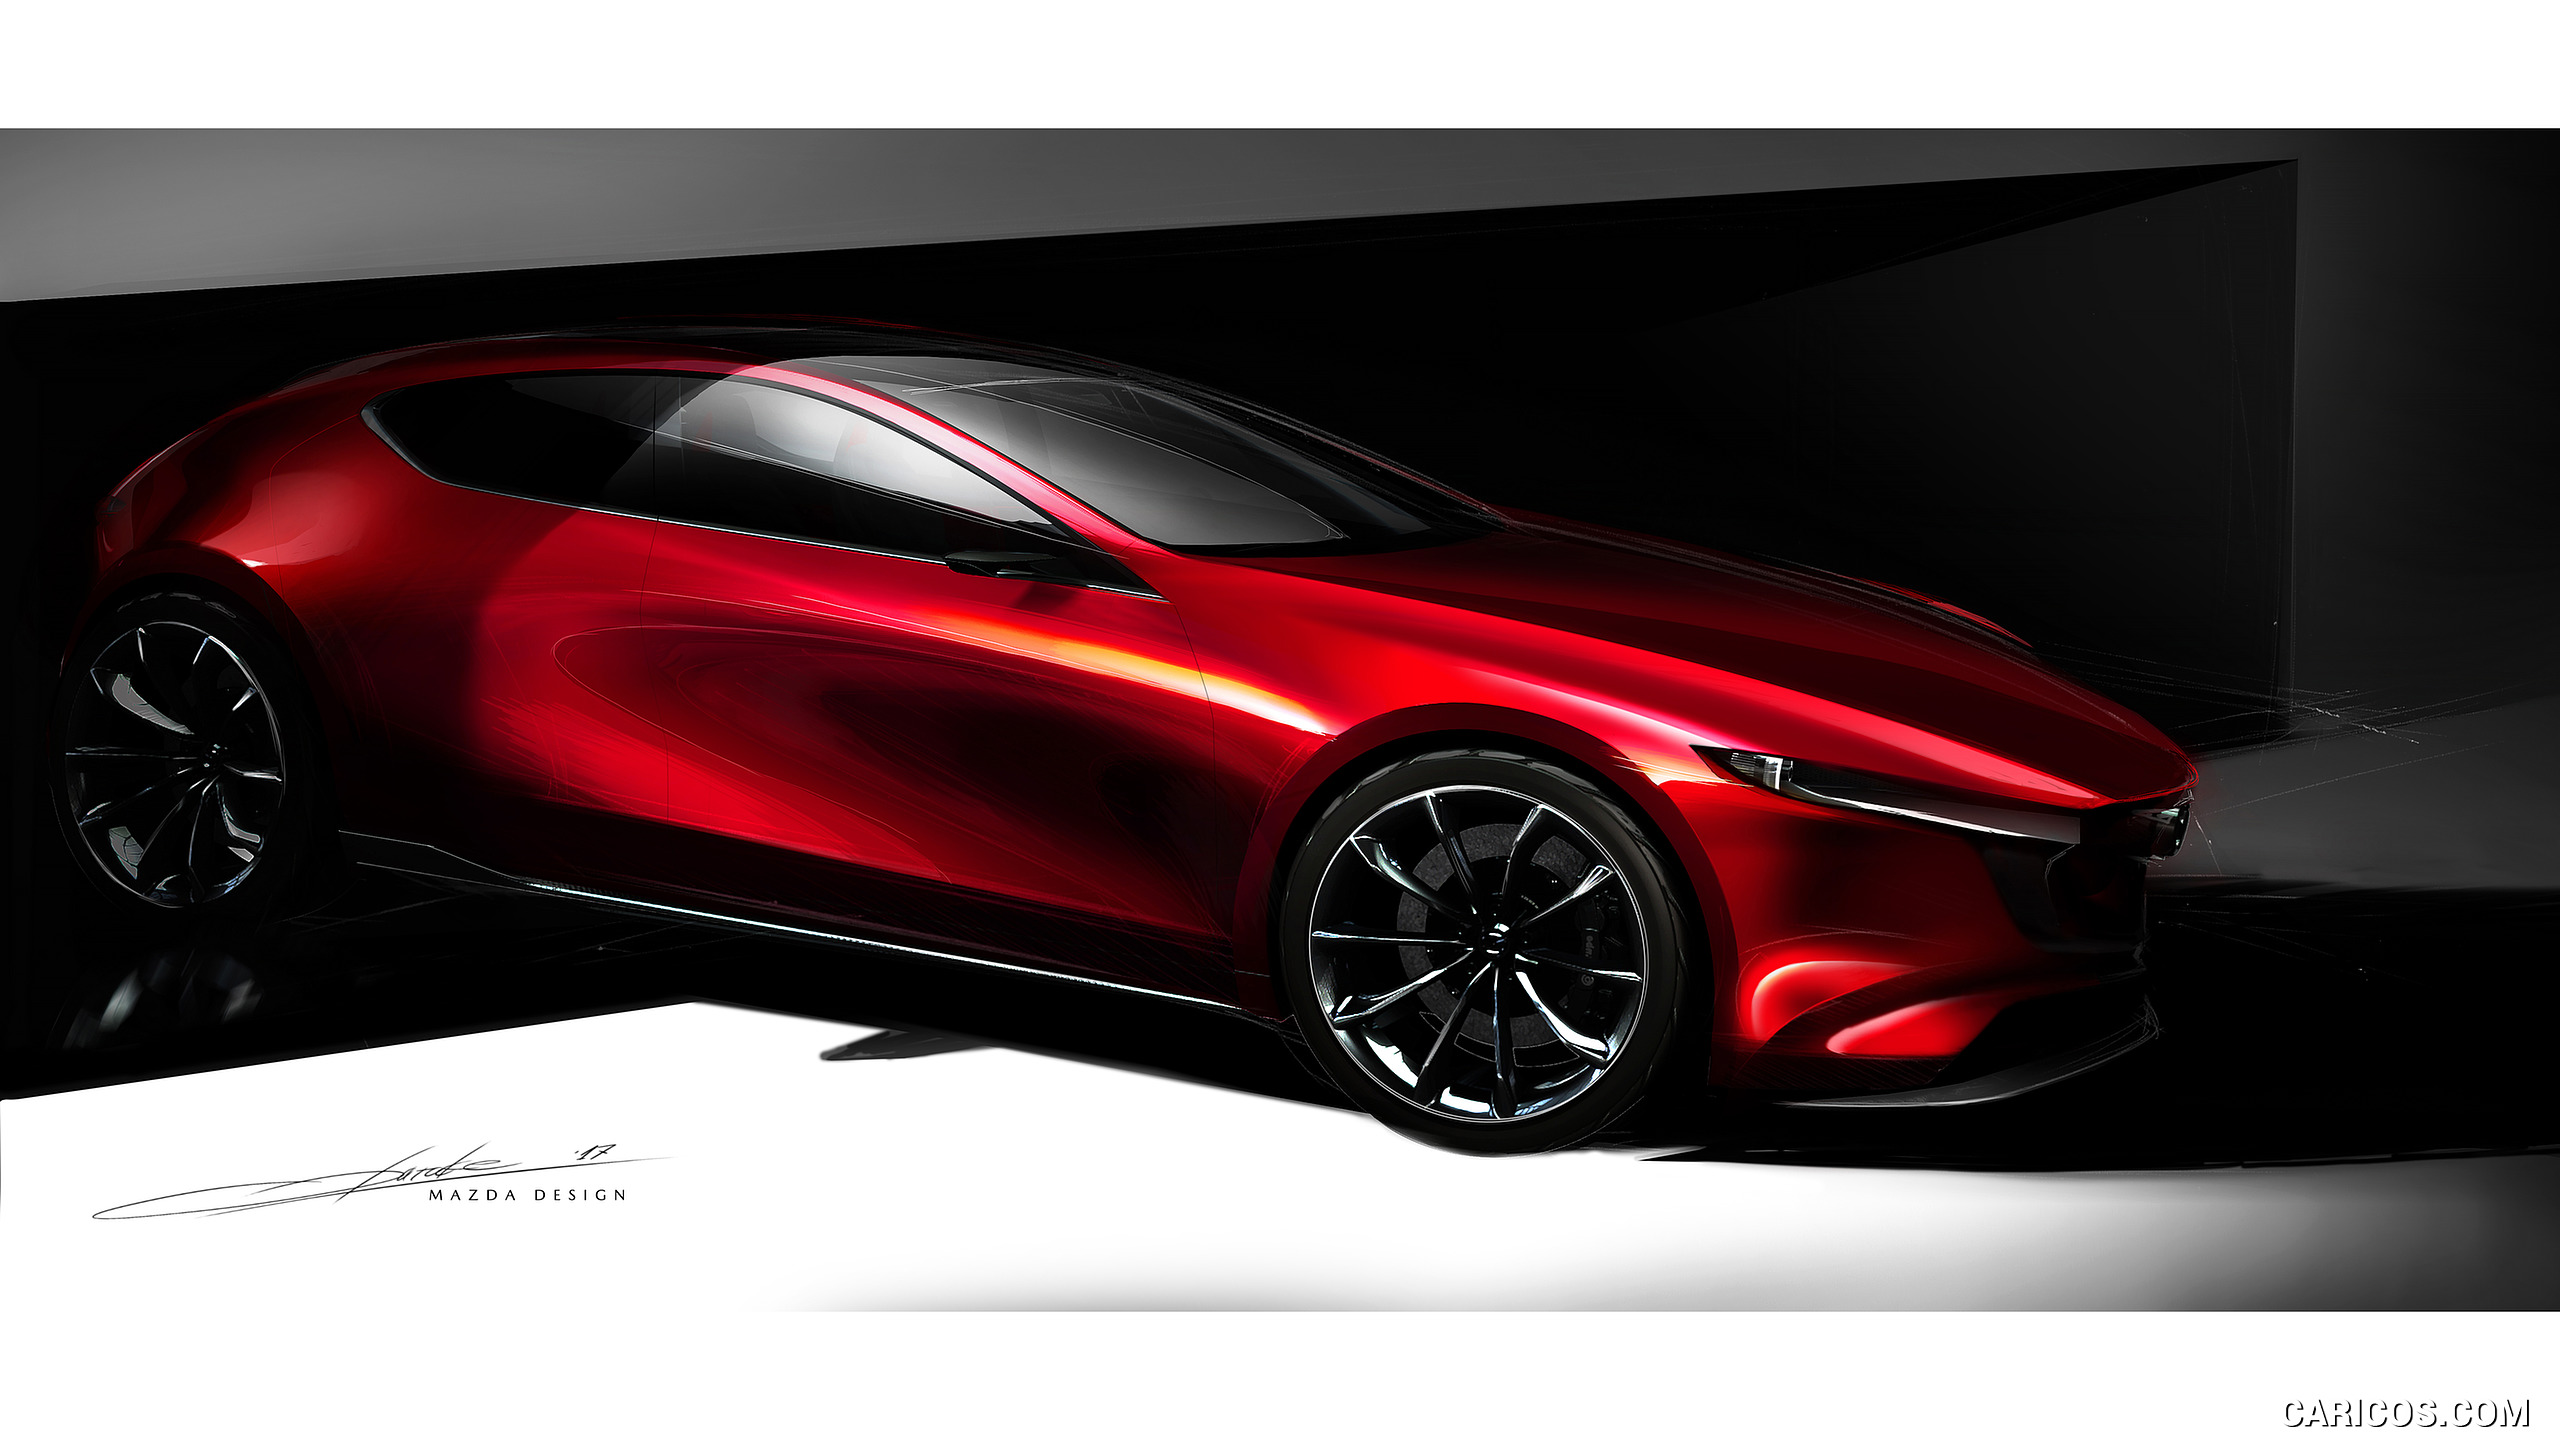 2017 Mazda KAI Concept - Design Sketch, #13 of 13